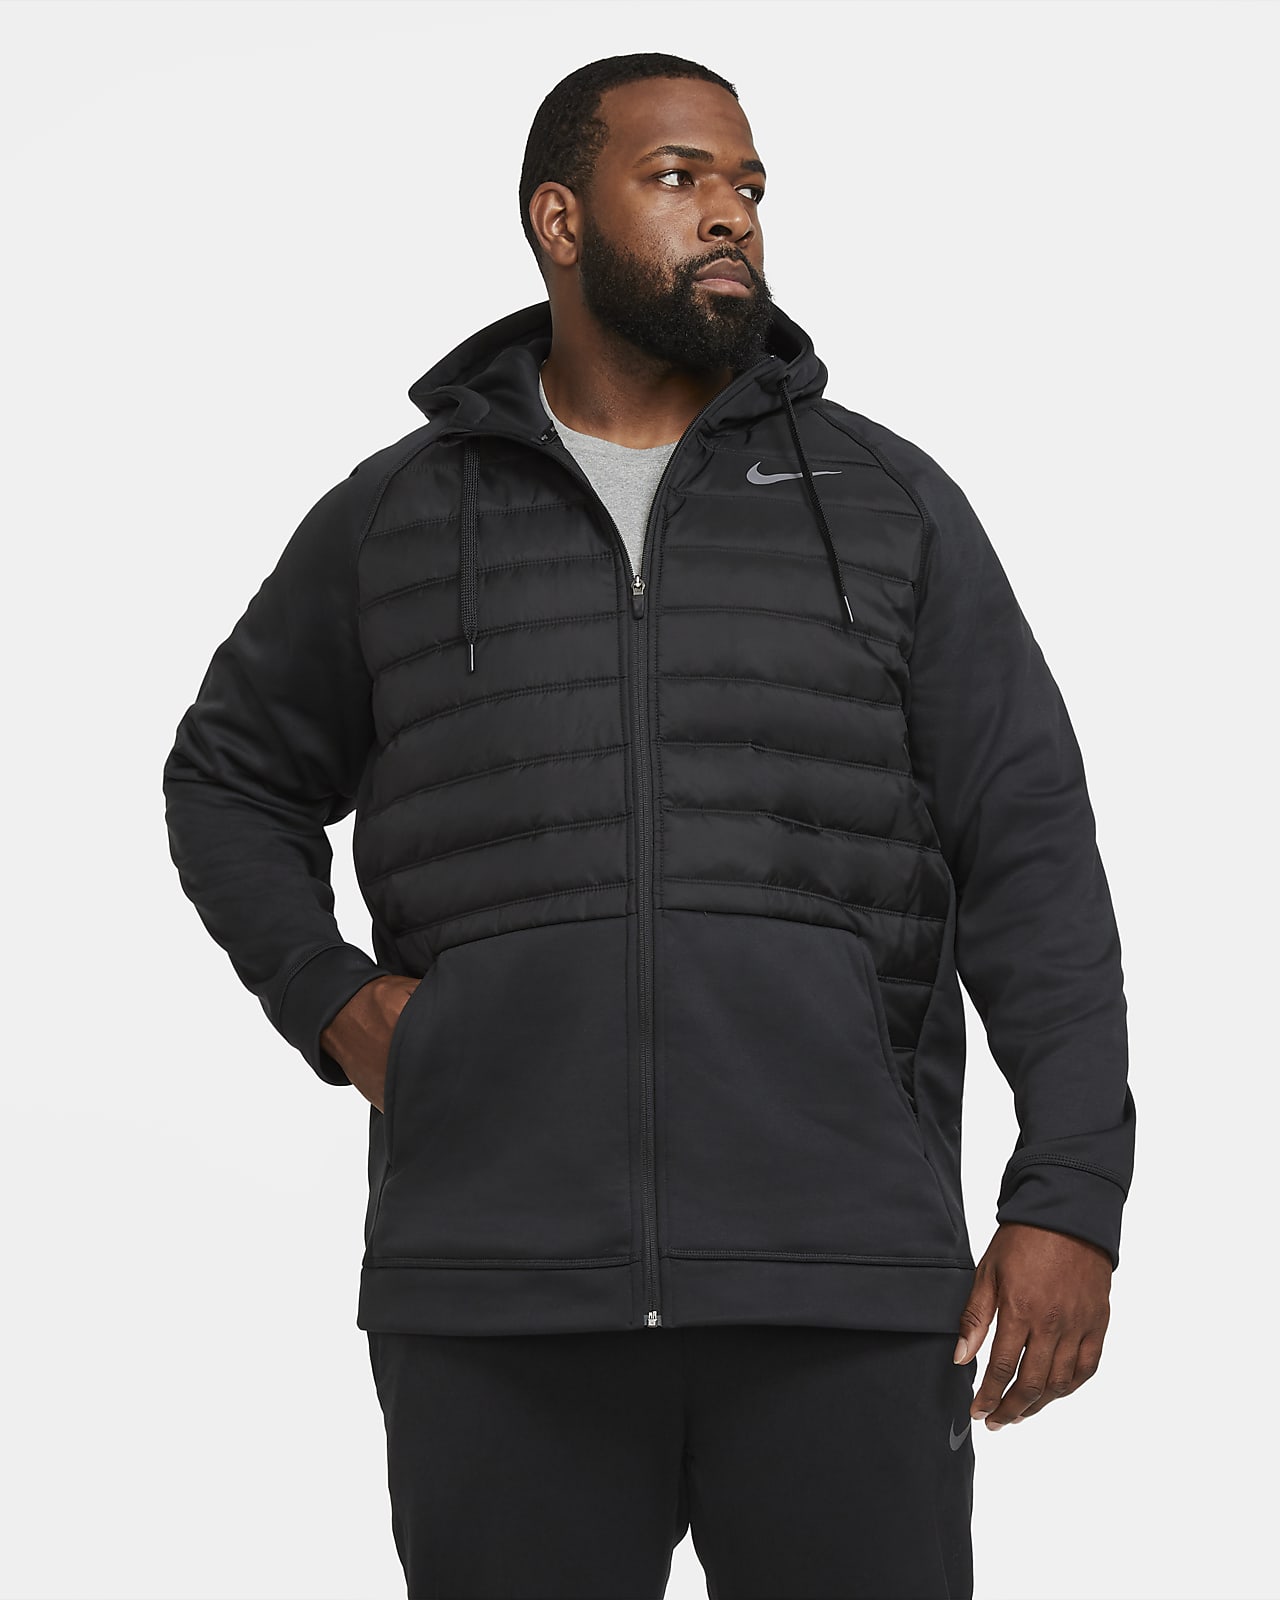 black nike zip jacket